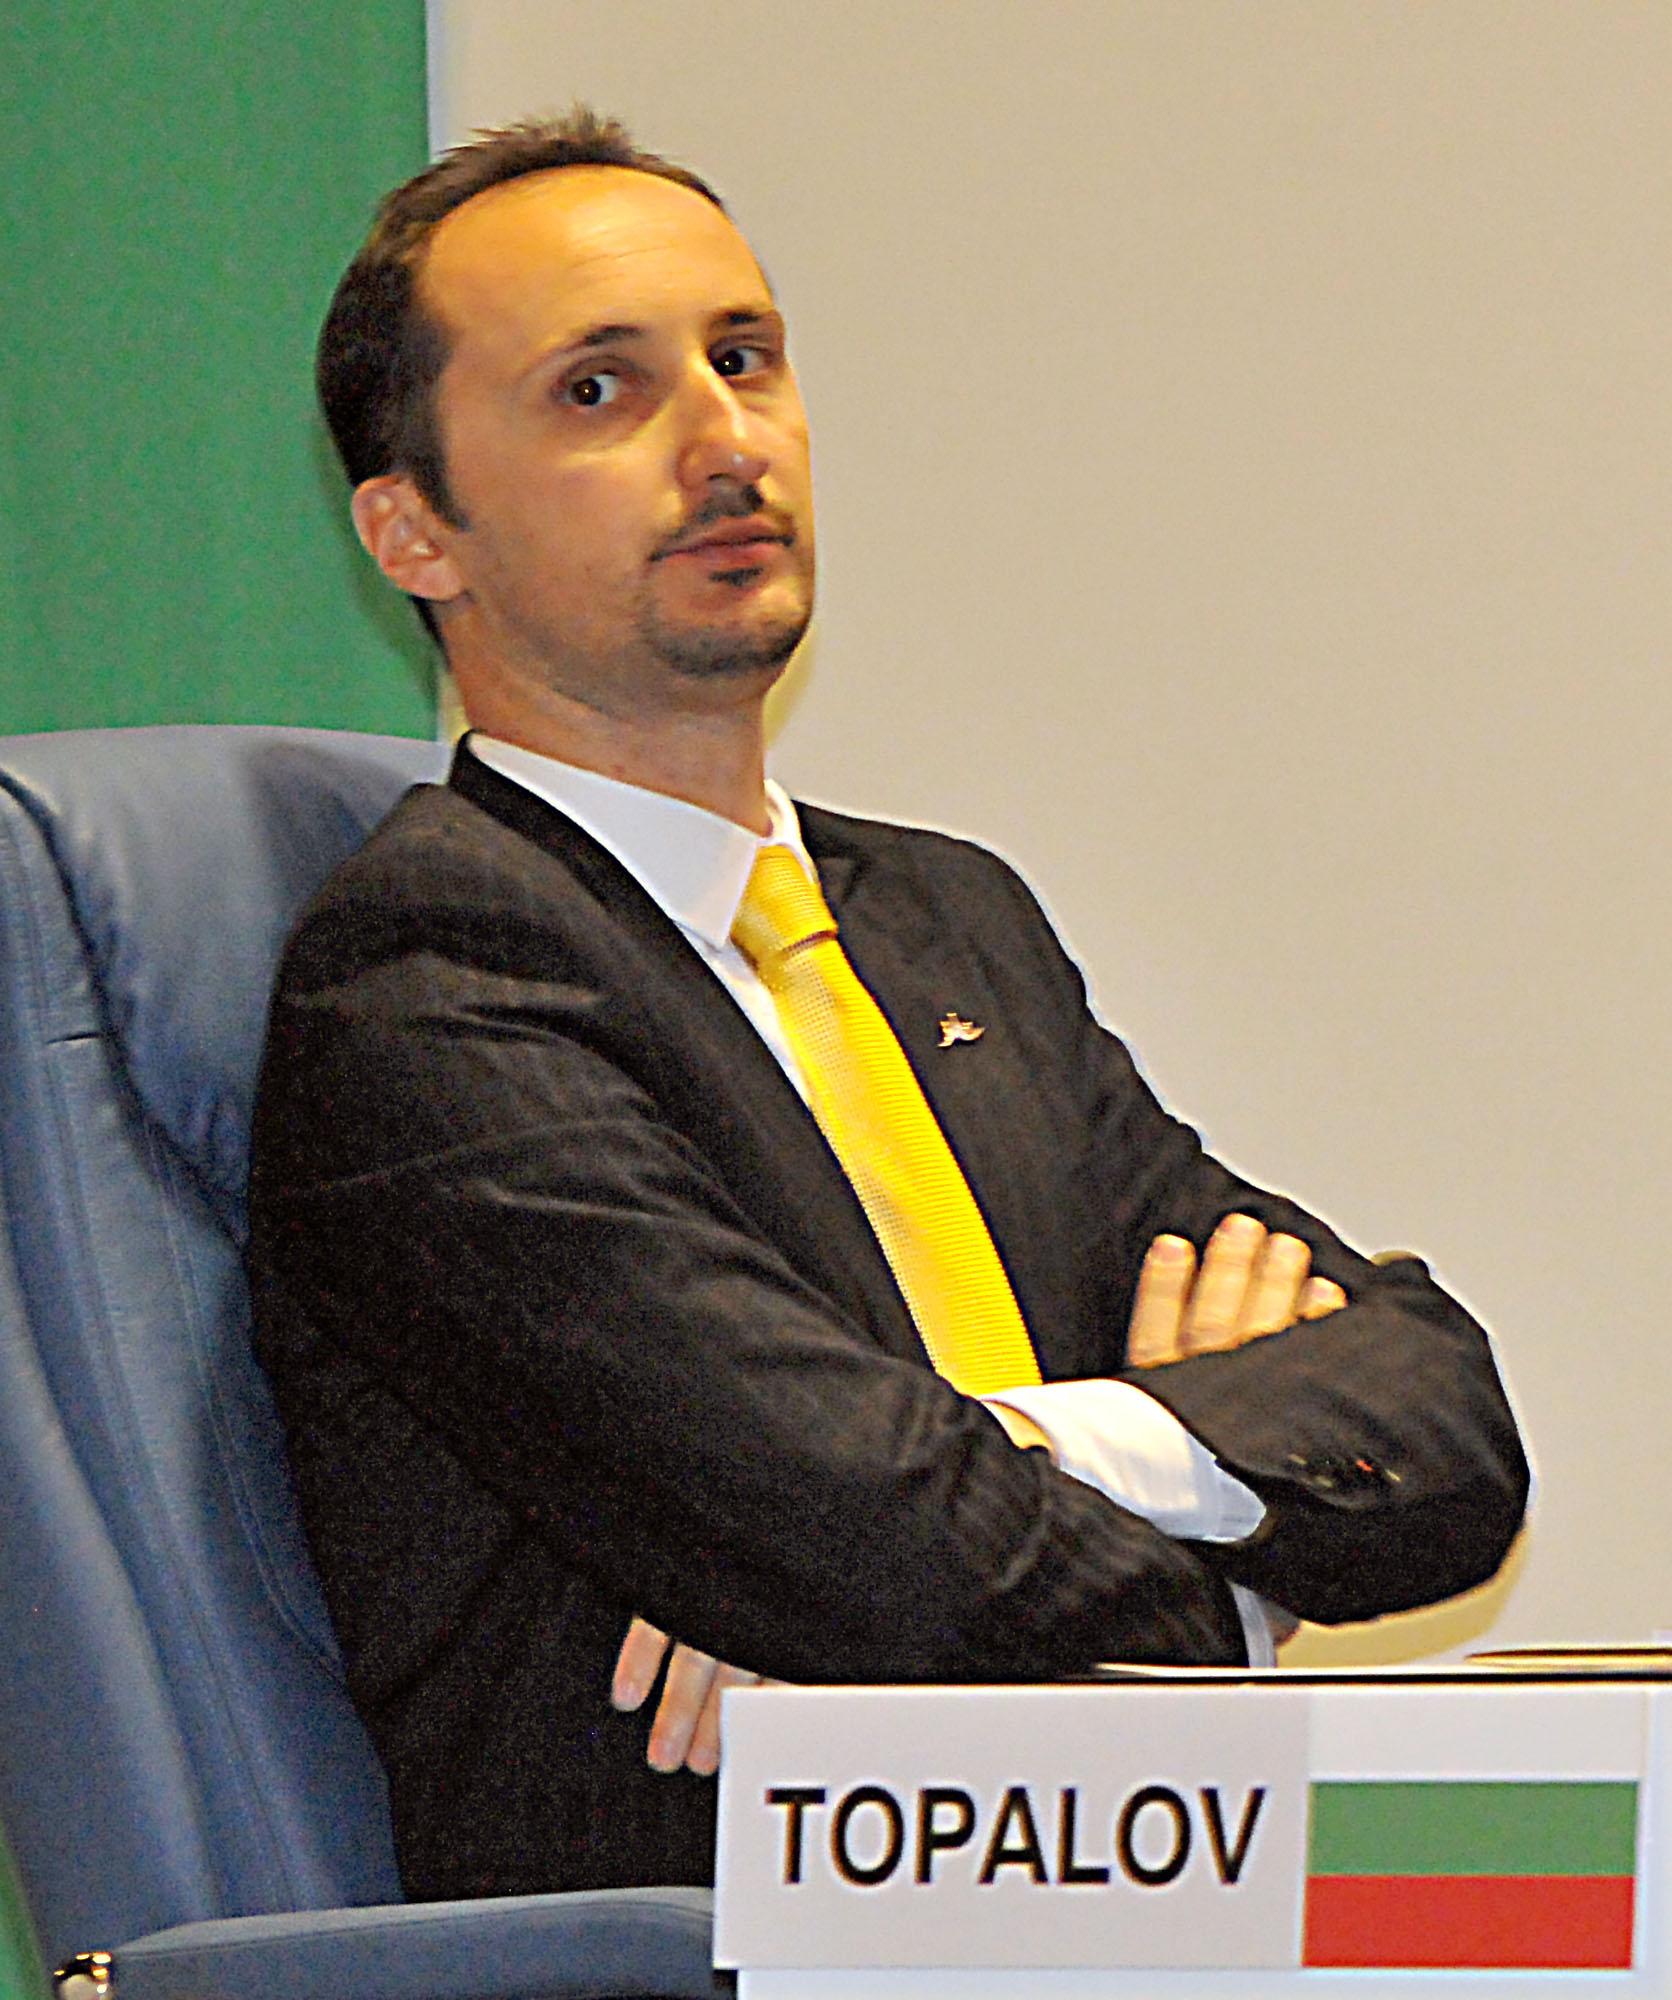 В четвъртък в партия от 5-тия кръг Веселин Топалов ще играе с черните фигури с Теймур Раджабов (Азербайджан)